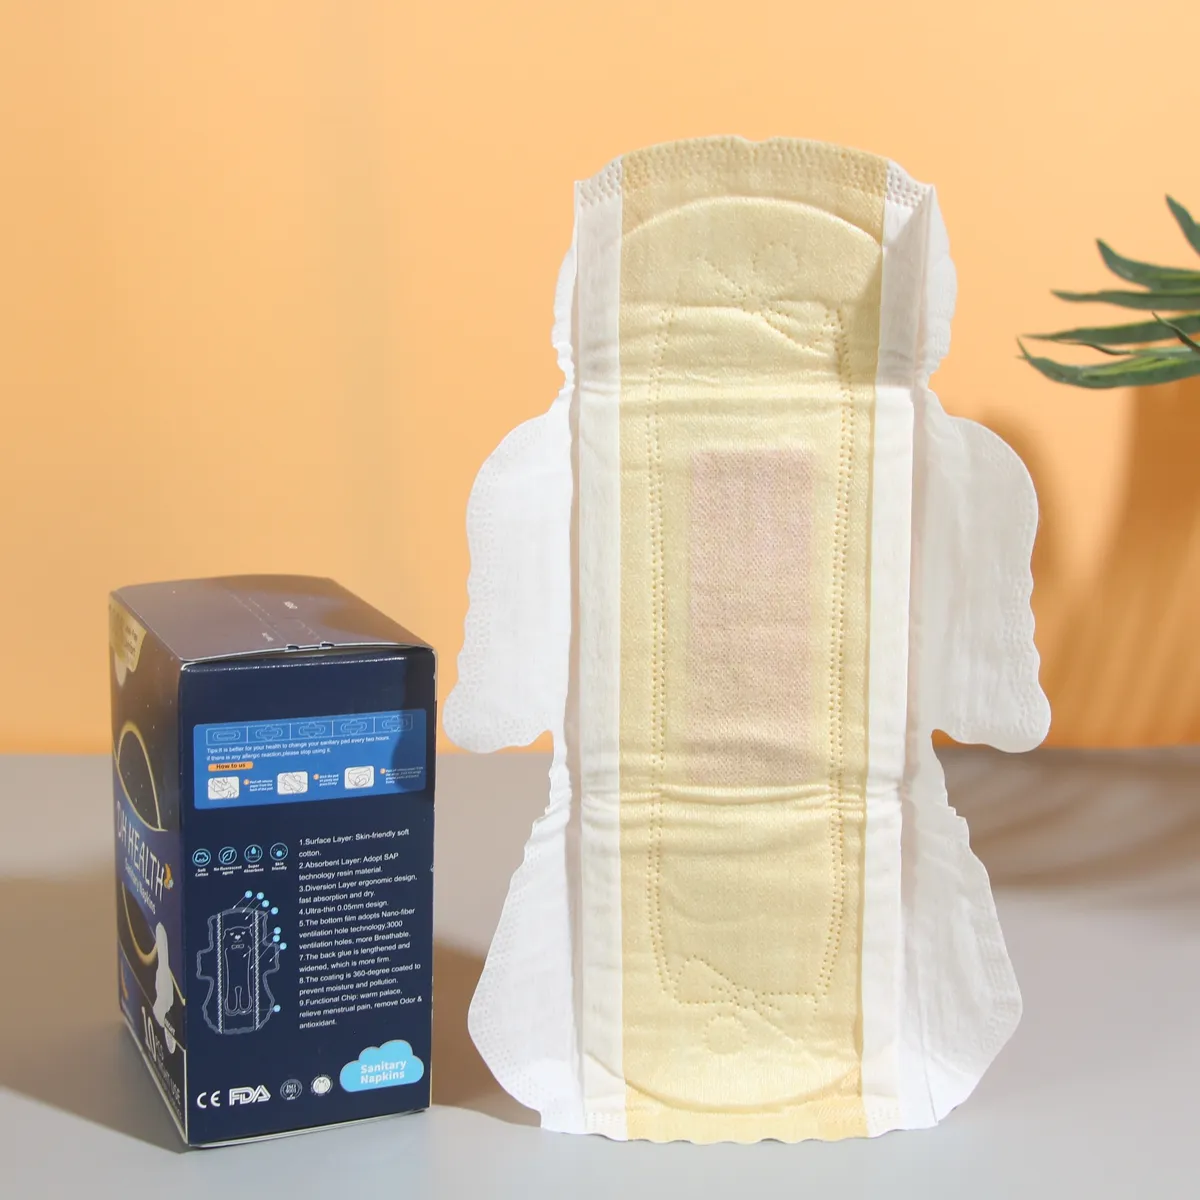 Bon prix coton menstruel hygiénique biologique Maxi serviettes hygiéniques naturelles pour femmes Ozone Mpo serviettes hygiéniques pour les femmes comme couches